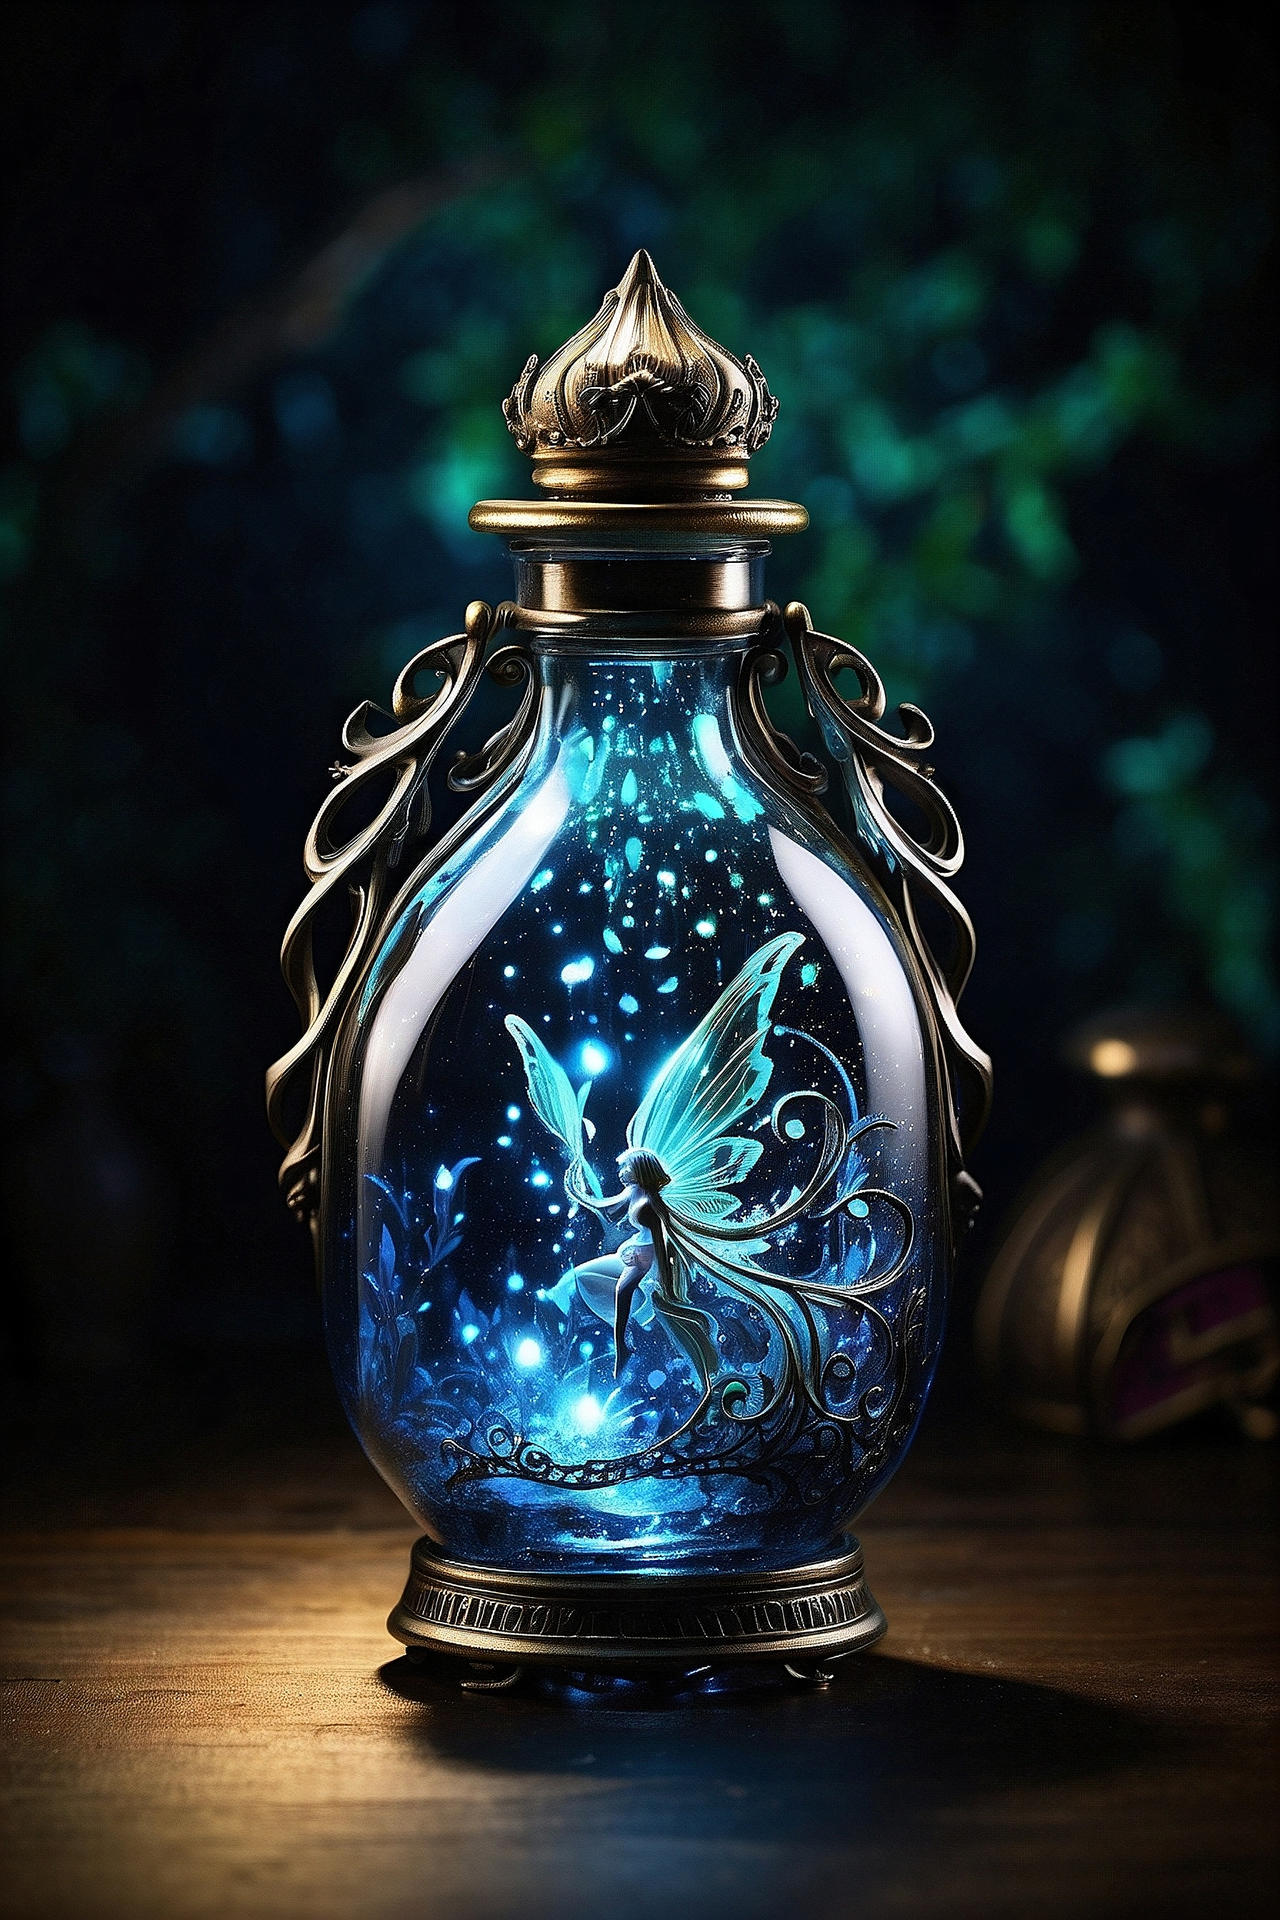 Magic Potion by Scyanchimera on DeviantArt